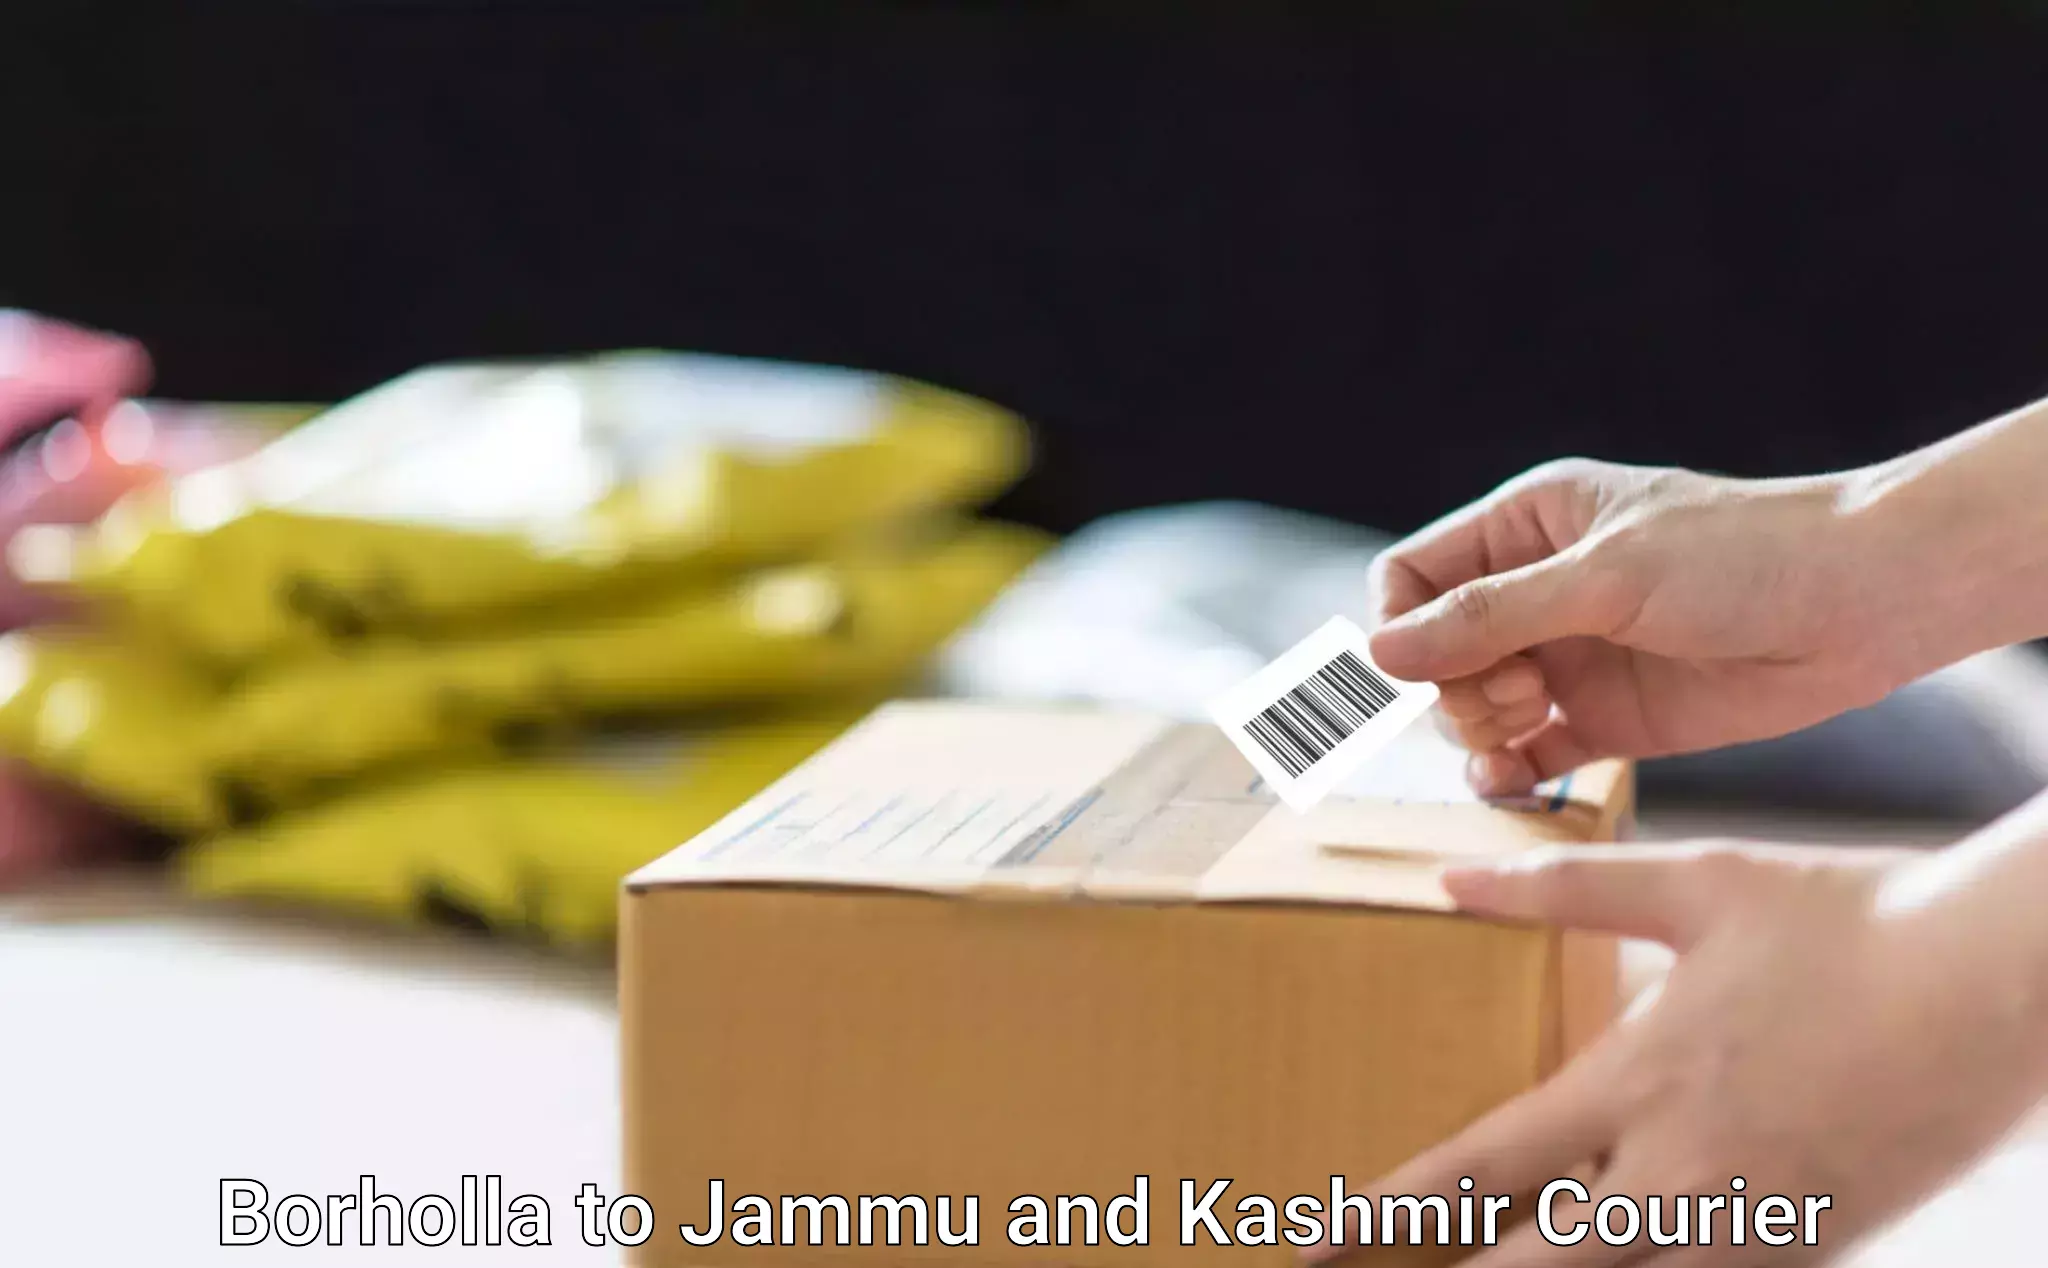 Smart logistics solutions Borholla to Jammu and Kashmir